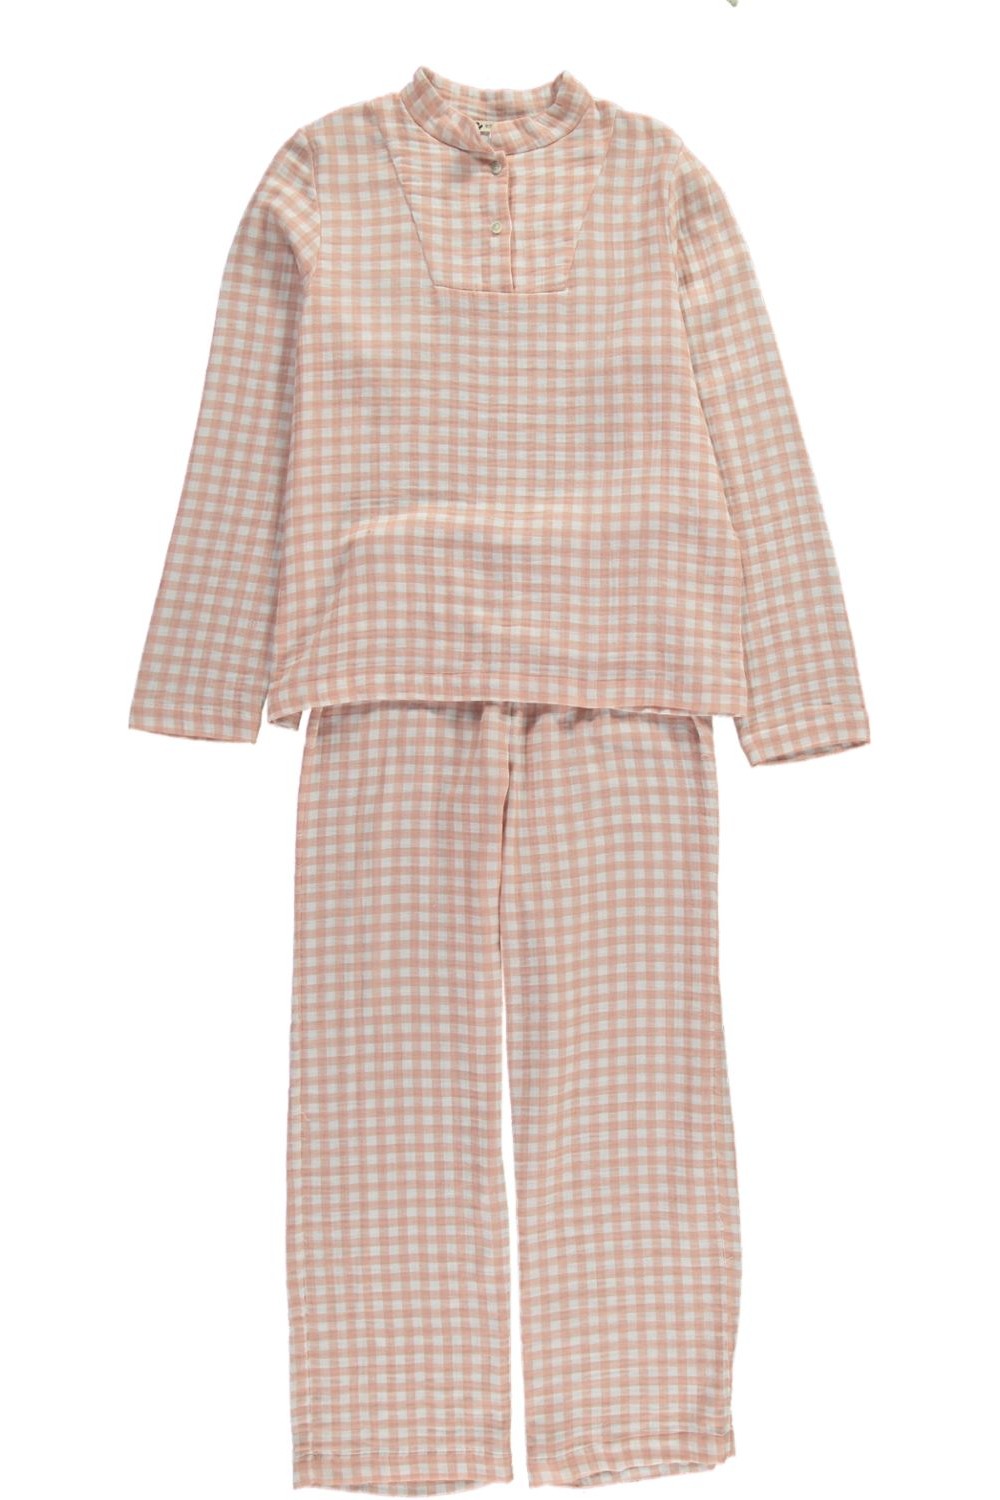 Deli women's pink checks pyjamas